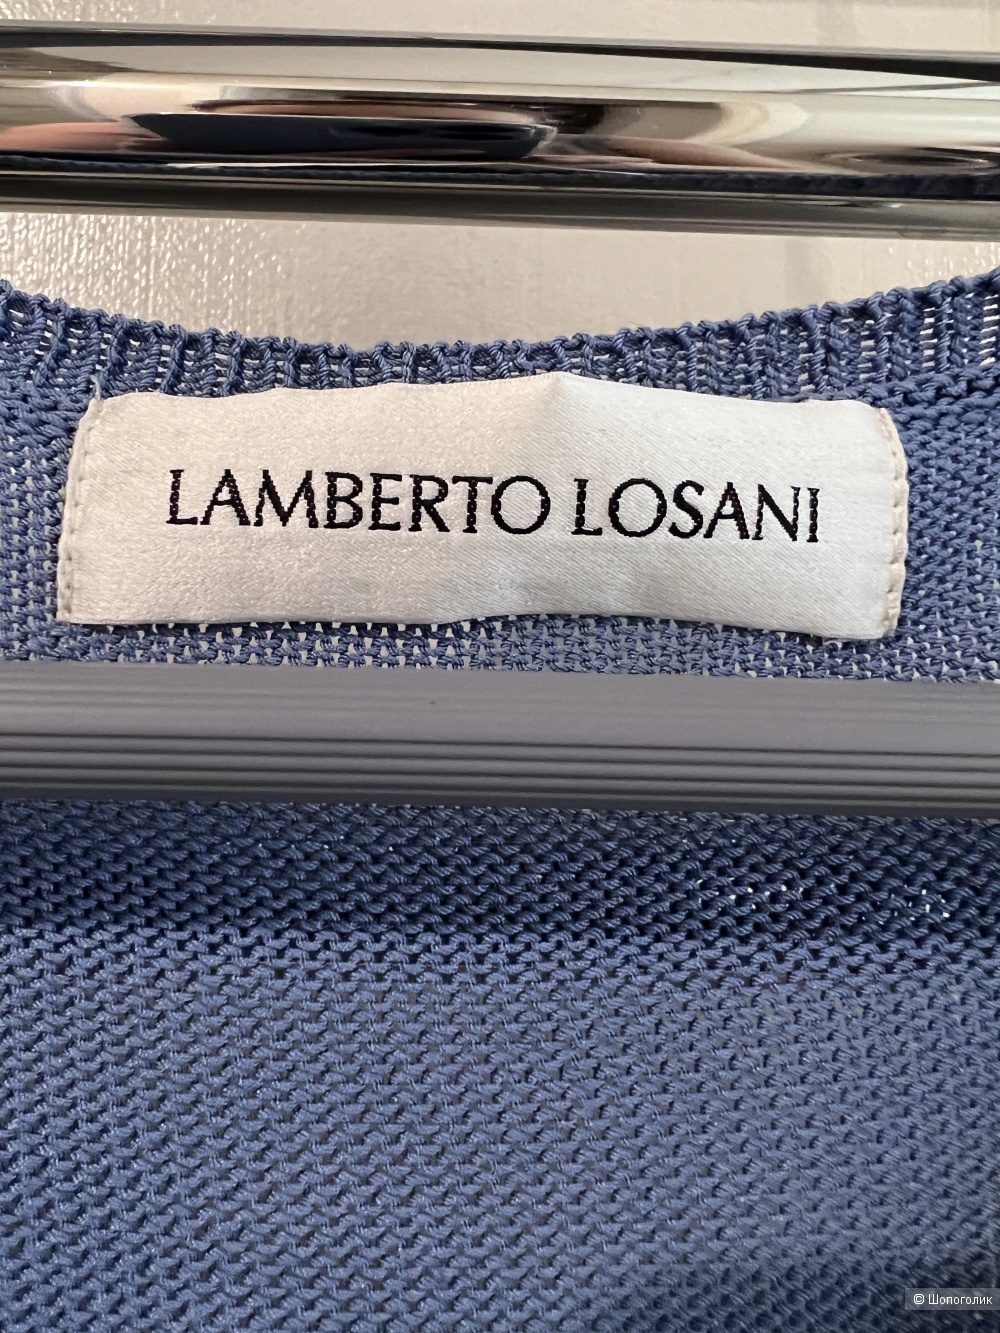 Кардиган LAMBERTO LOSANI, L.